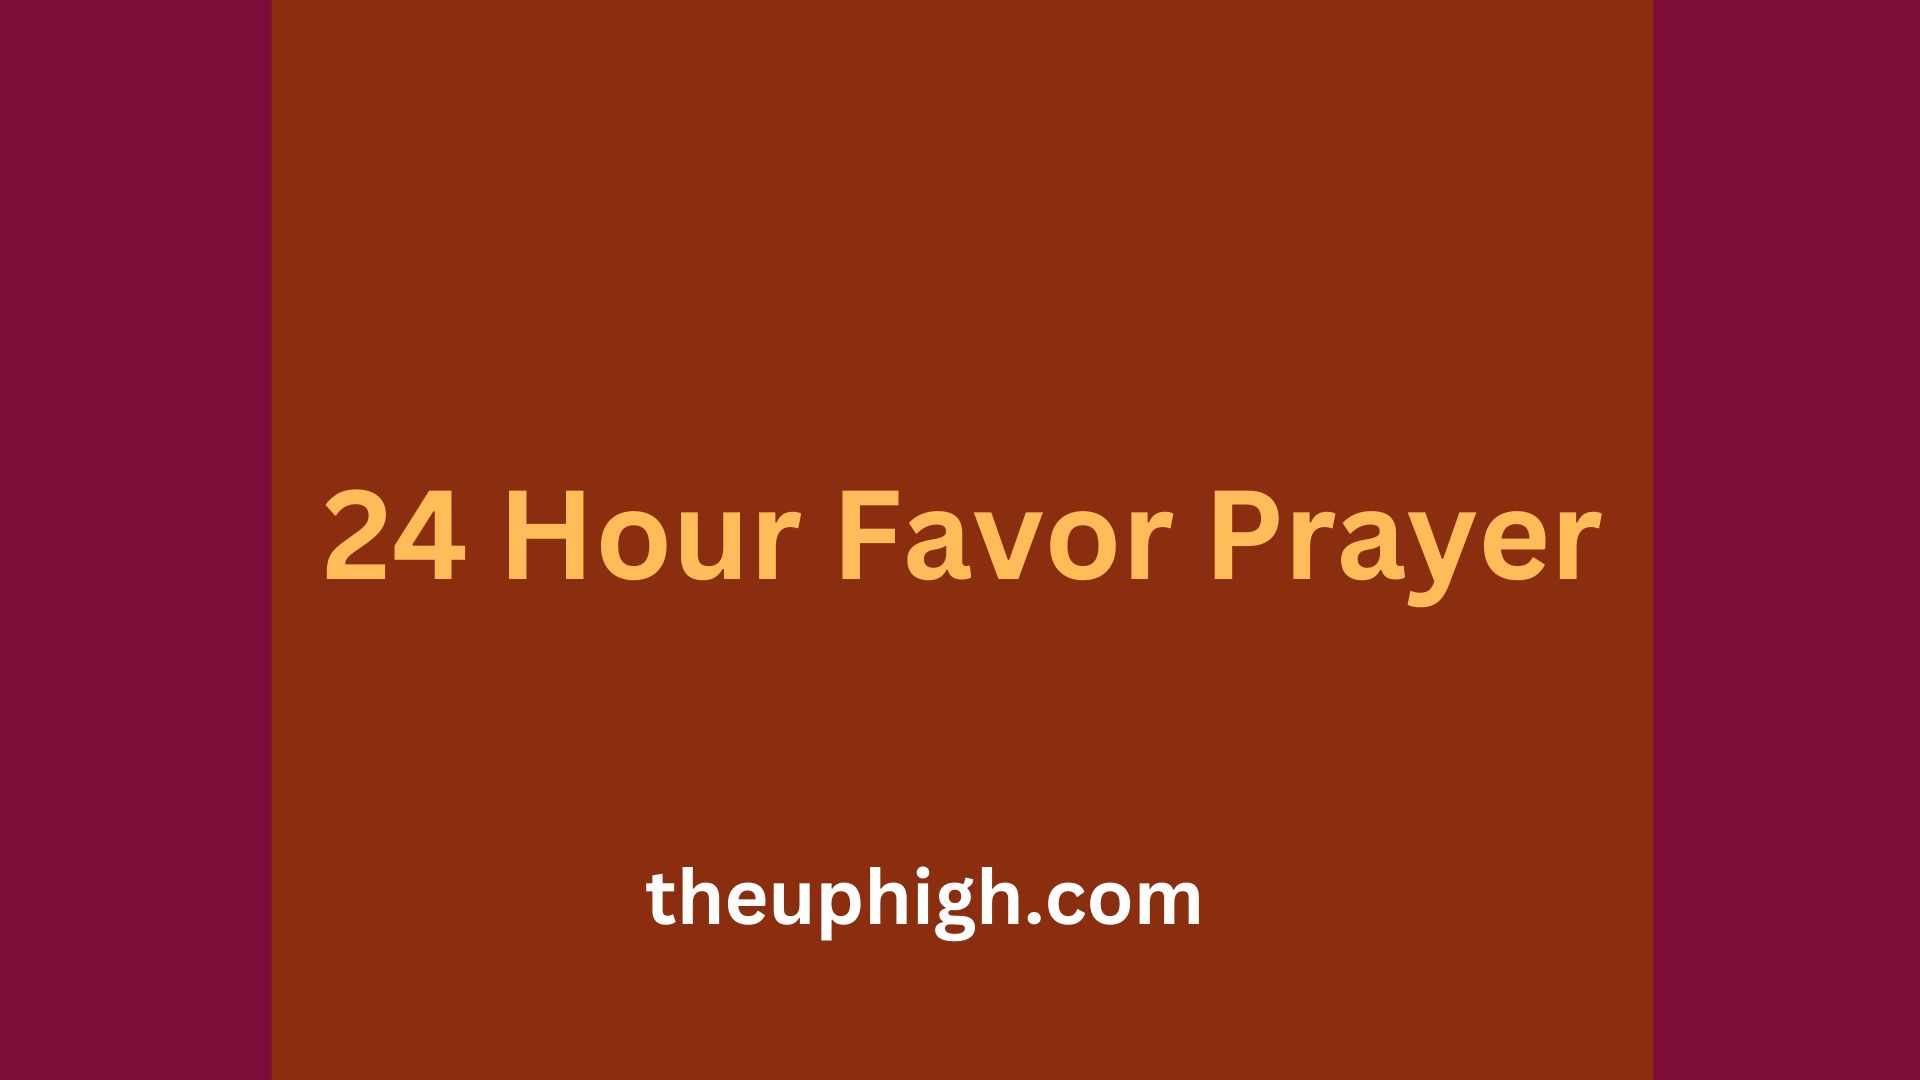 24 Hour Favor Prayer